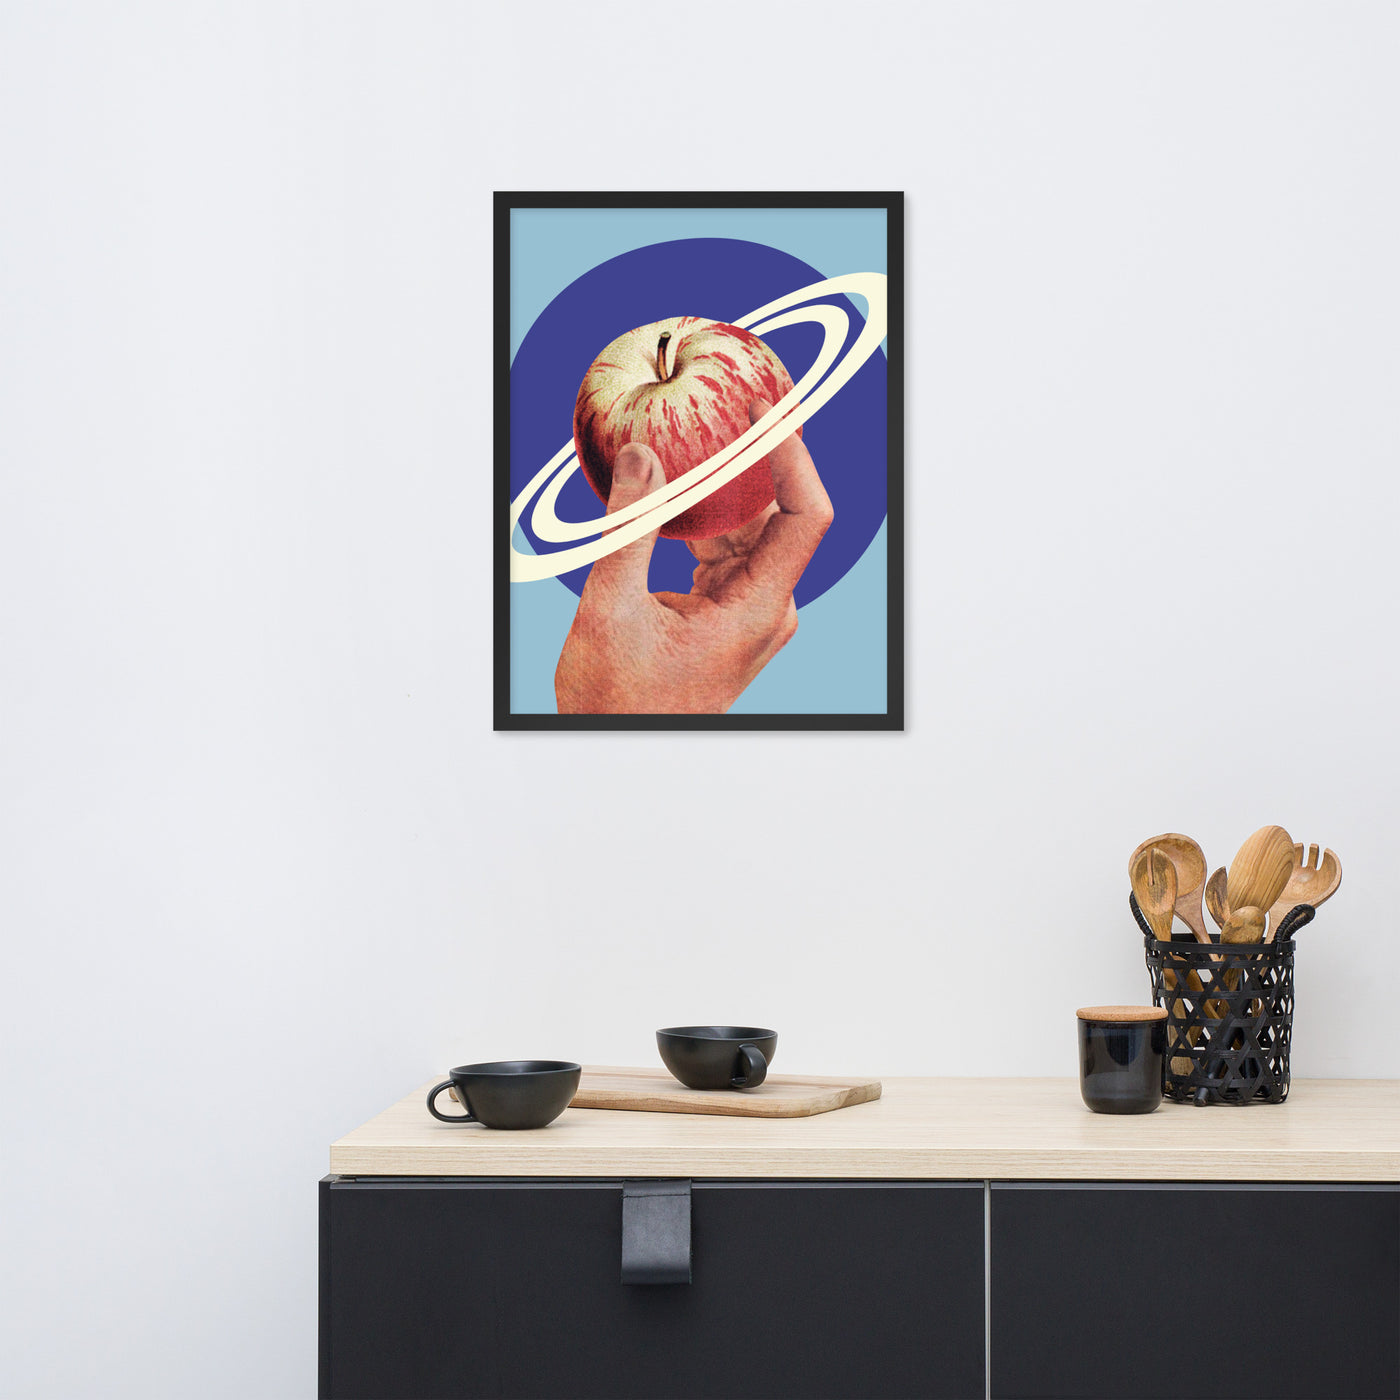 Gerahmtes Bild Kollektion "Kitchen Art" - Space Apple